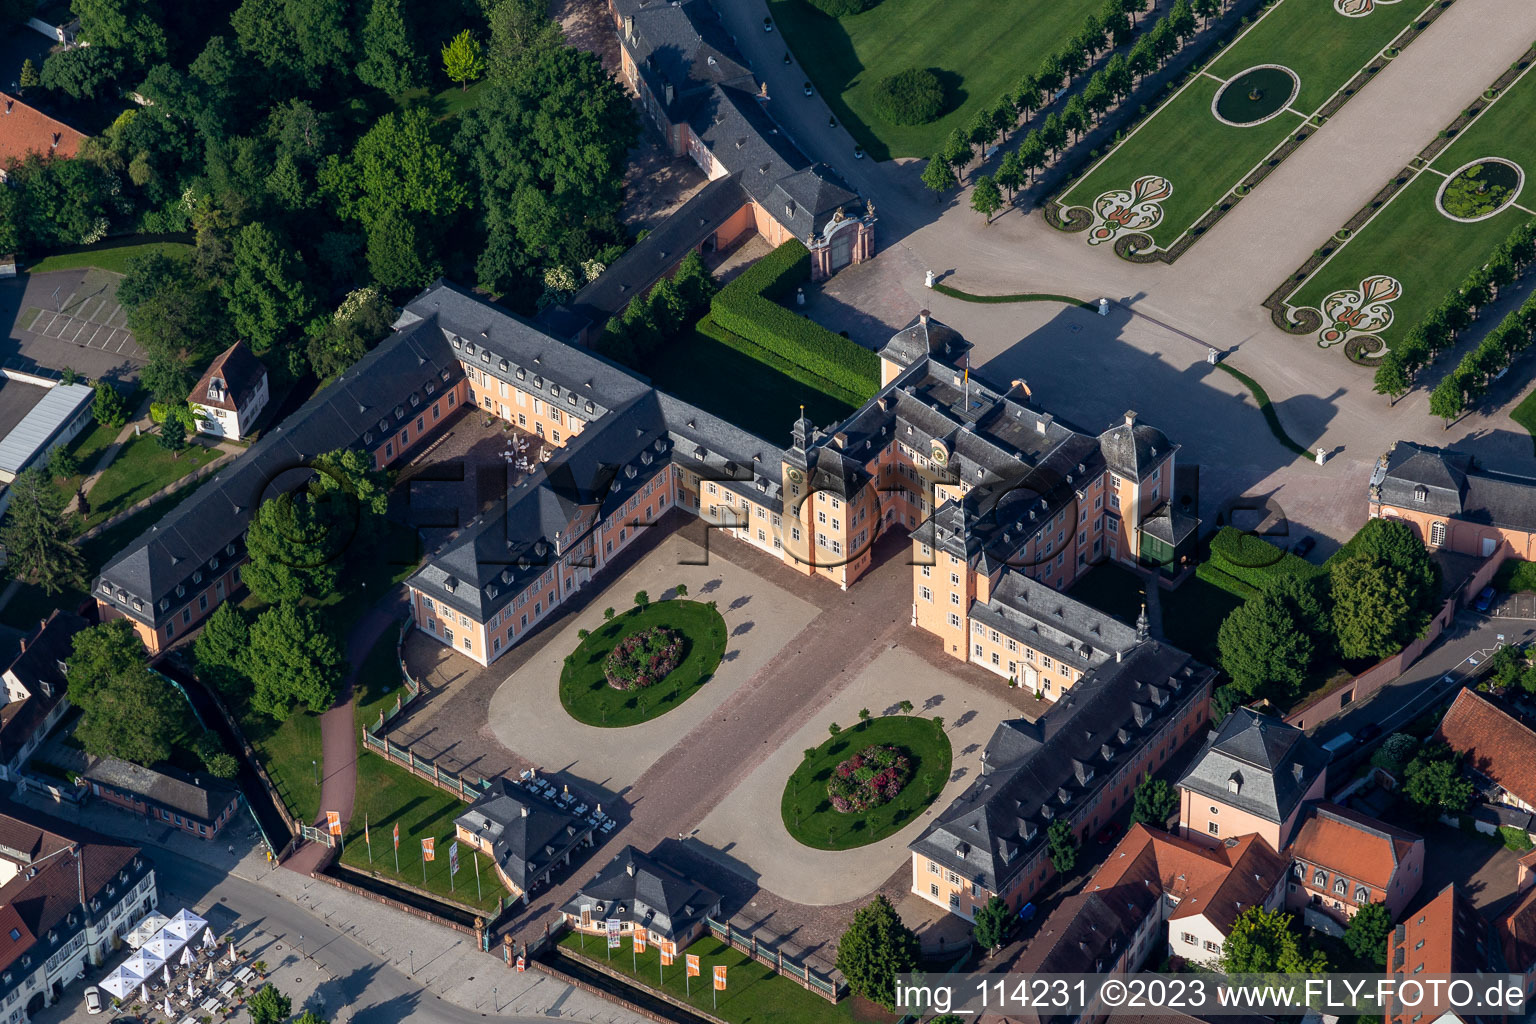 Luftbild von Blick auf das Schloss Schwetzingen und den französische Barockgarten in Schwetzingen. Das Schloss diente den pfälzischen Kurfürsten als Sommerresidenz und wurde in seiner heutigen Form ab dem Jahr 1697 errichtet im Bundesland Baden-Württemberg, Deutschland